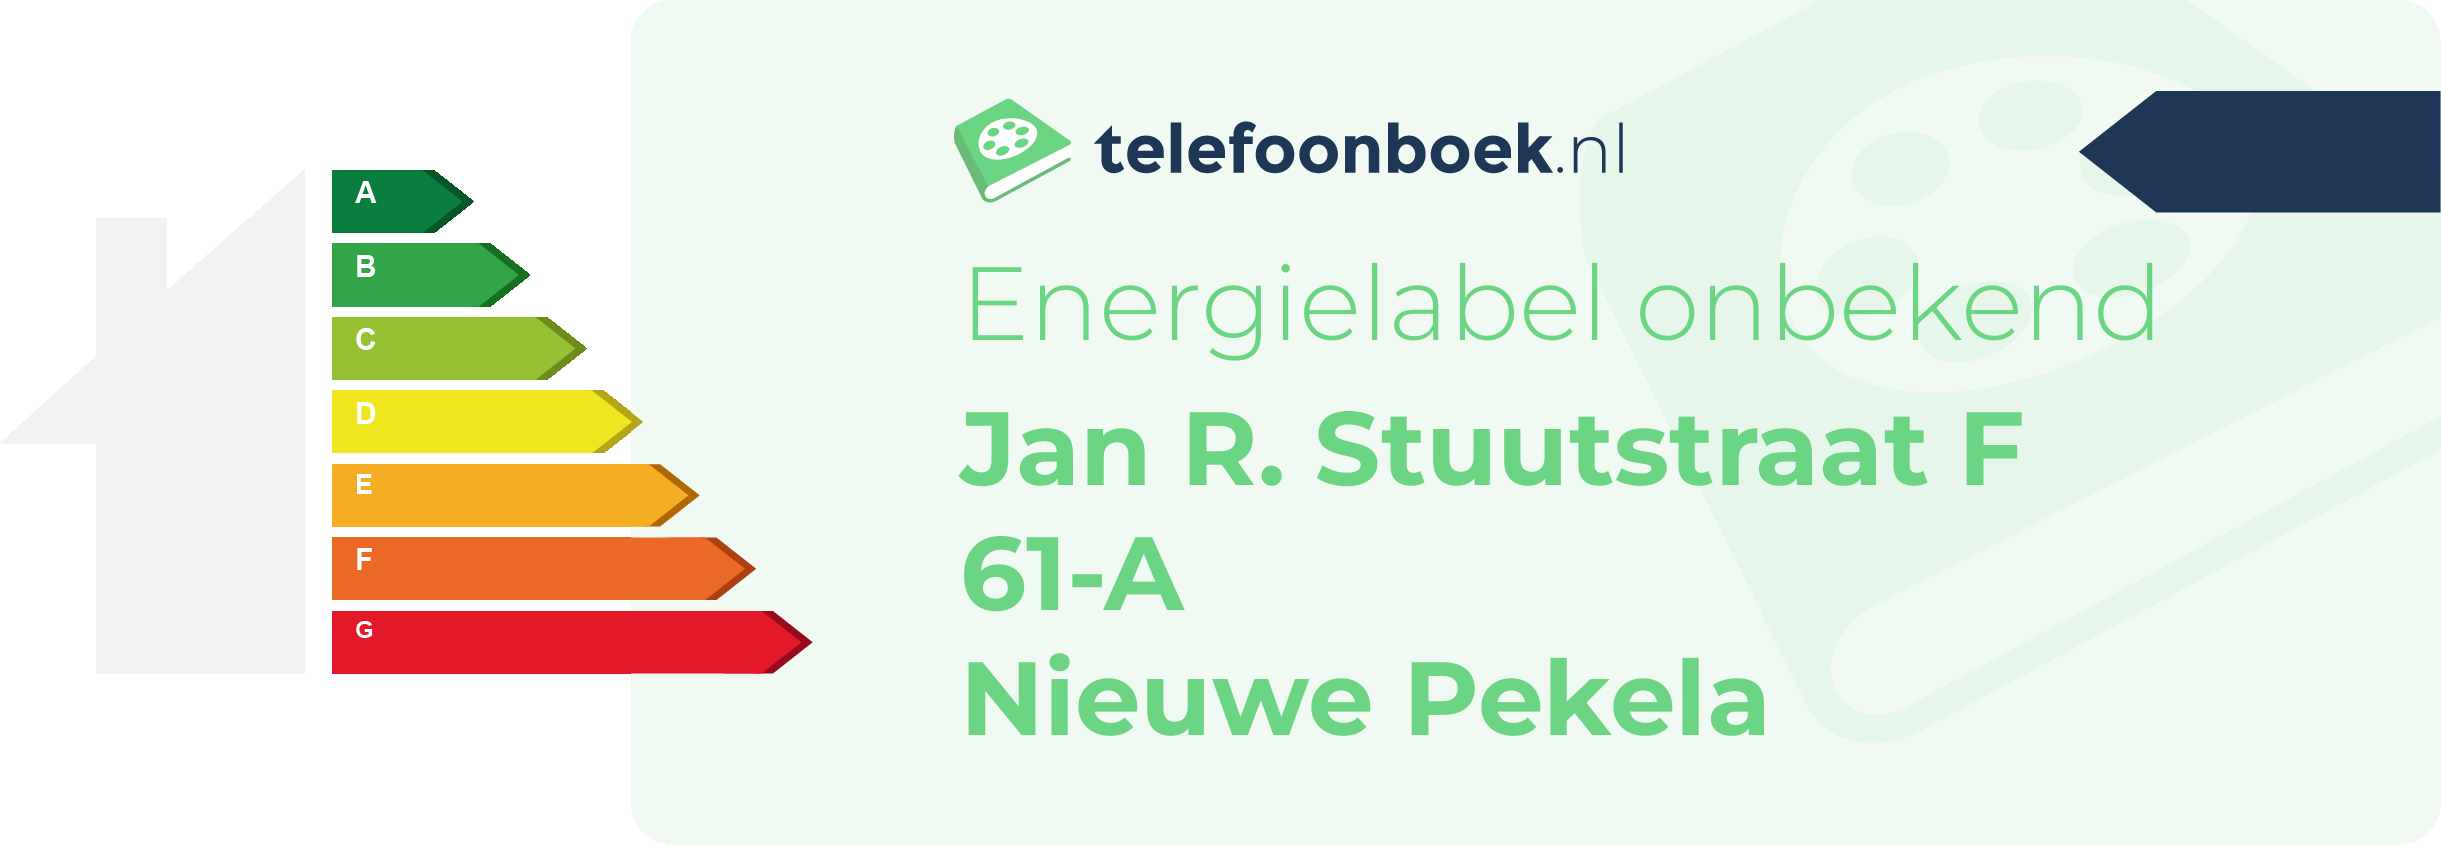 Energielabel Jan R. Stuutstraat F 61-A Nieuwe Pekela